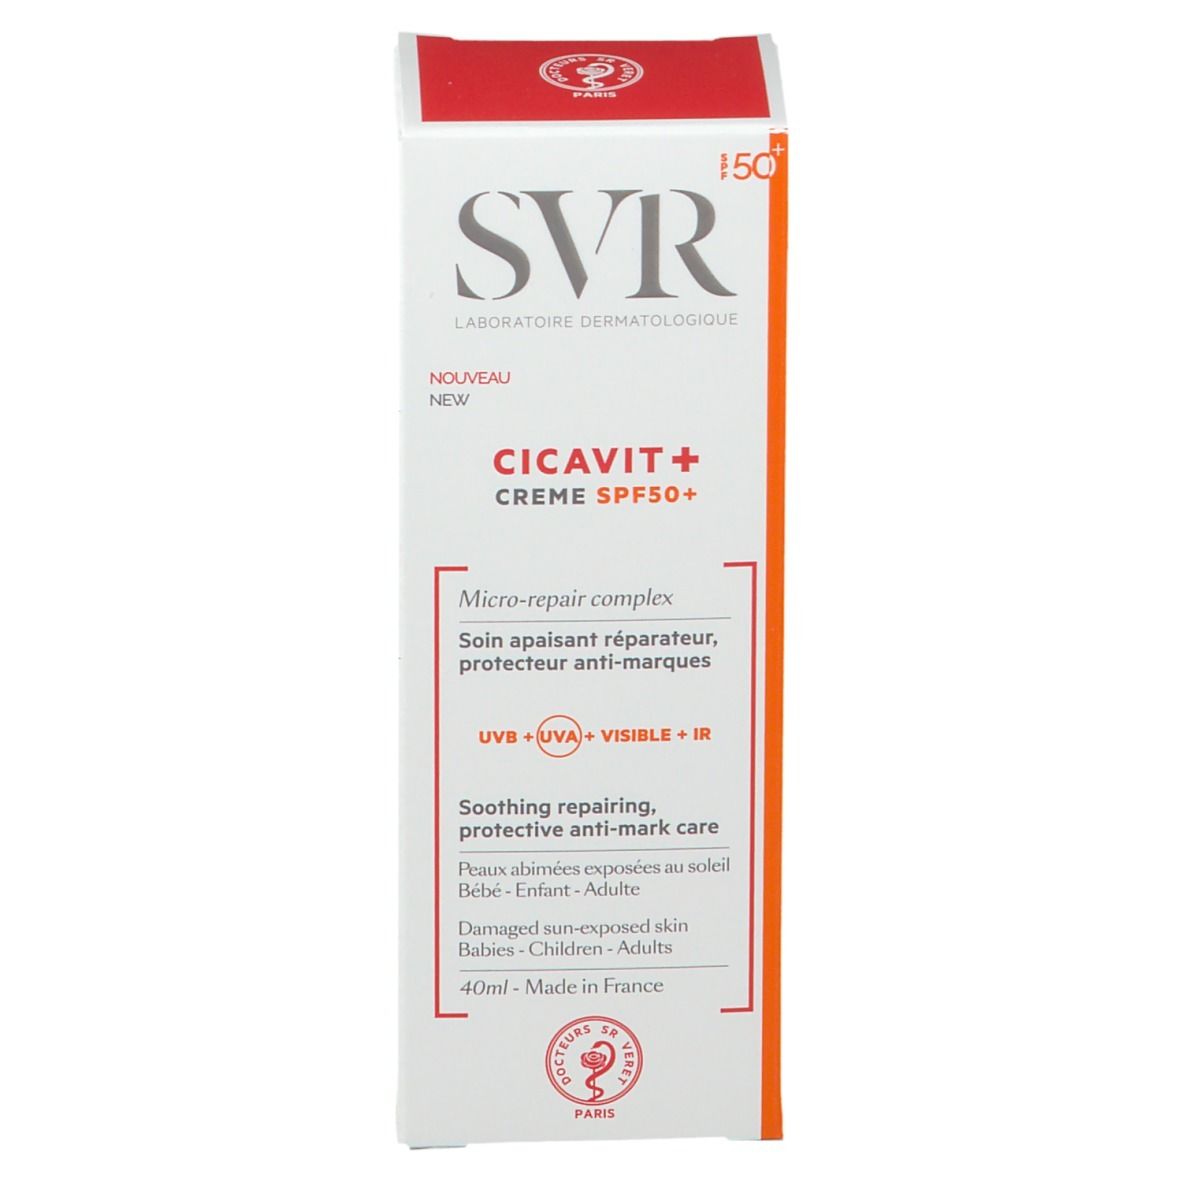 SVR Cicavit+ Creme SPF50